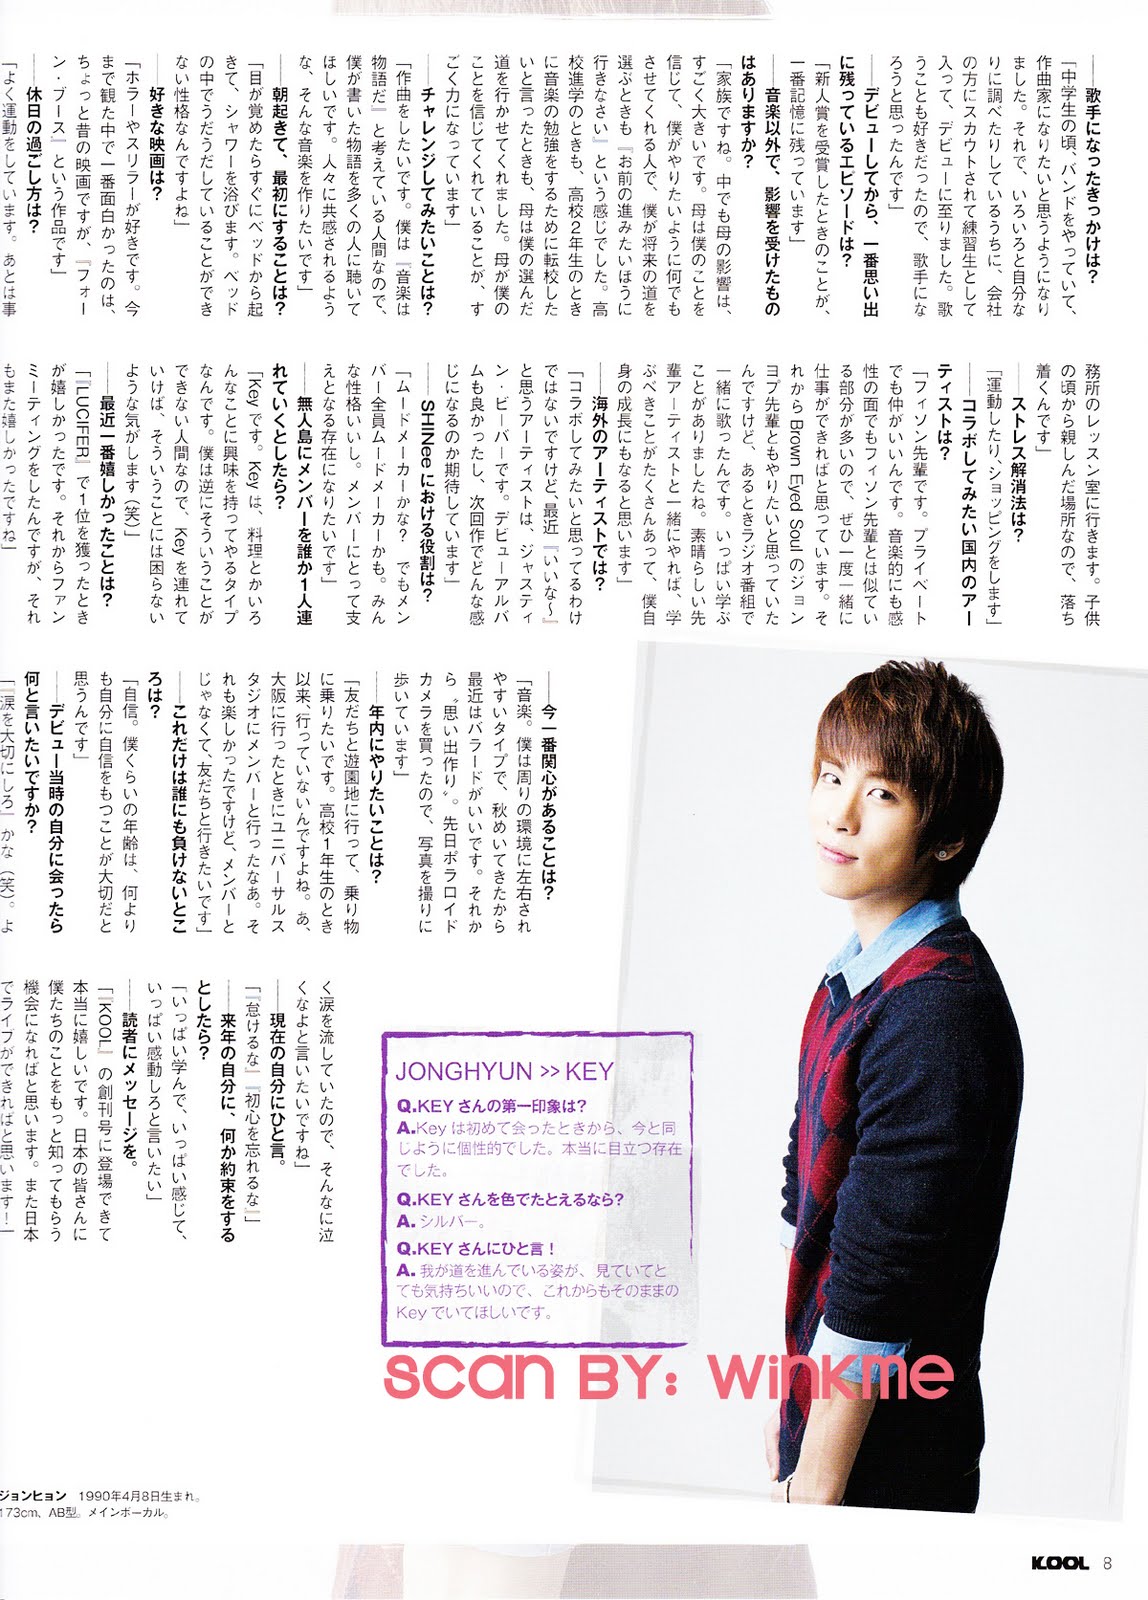 [12.11.10][News] Bài phỏng vấn SHINee trên tạp chí KOOL ( 2MIN, JONG) Jjong%2B02